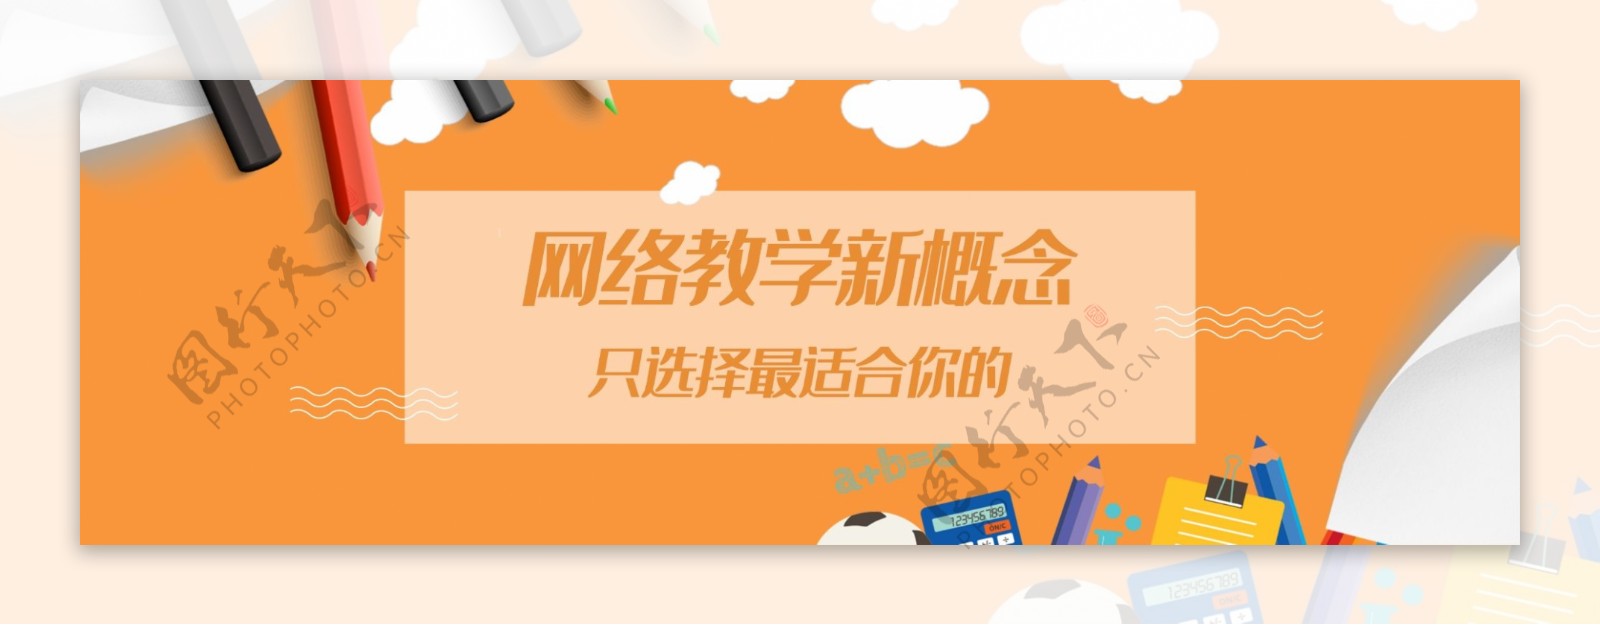 创意网络教学网页广告banner设计